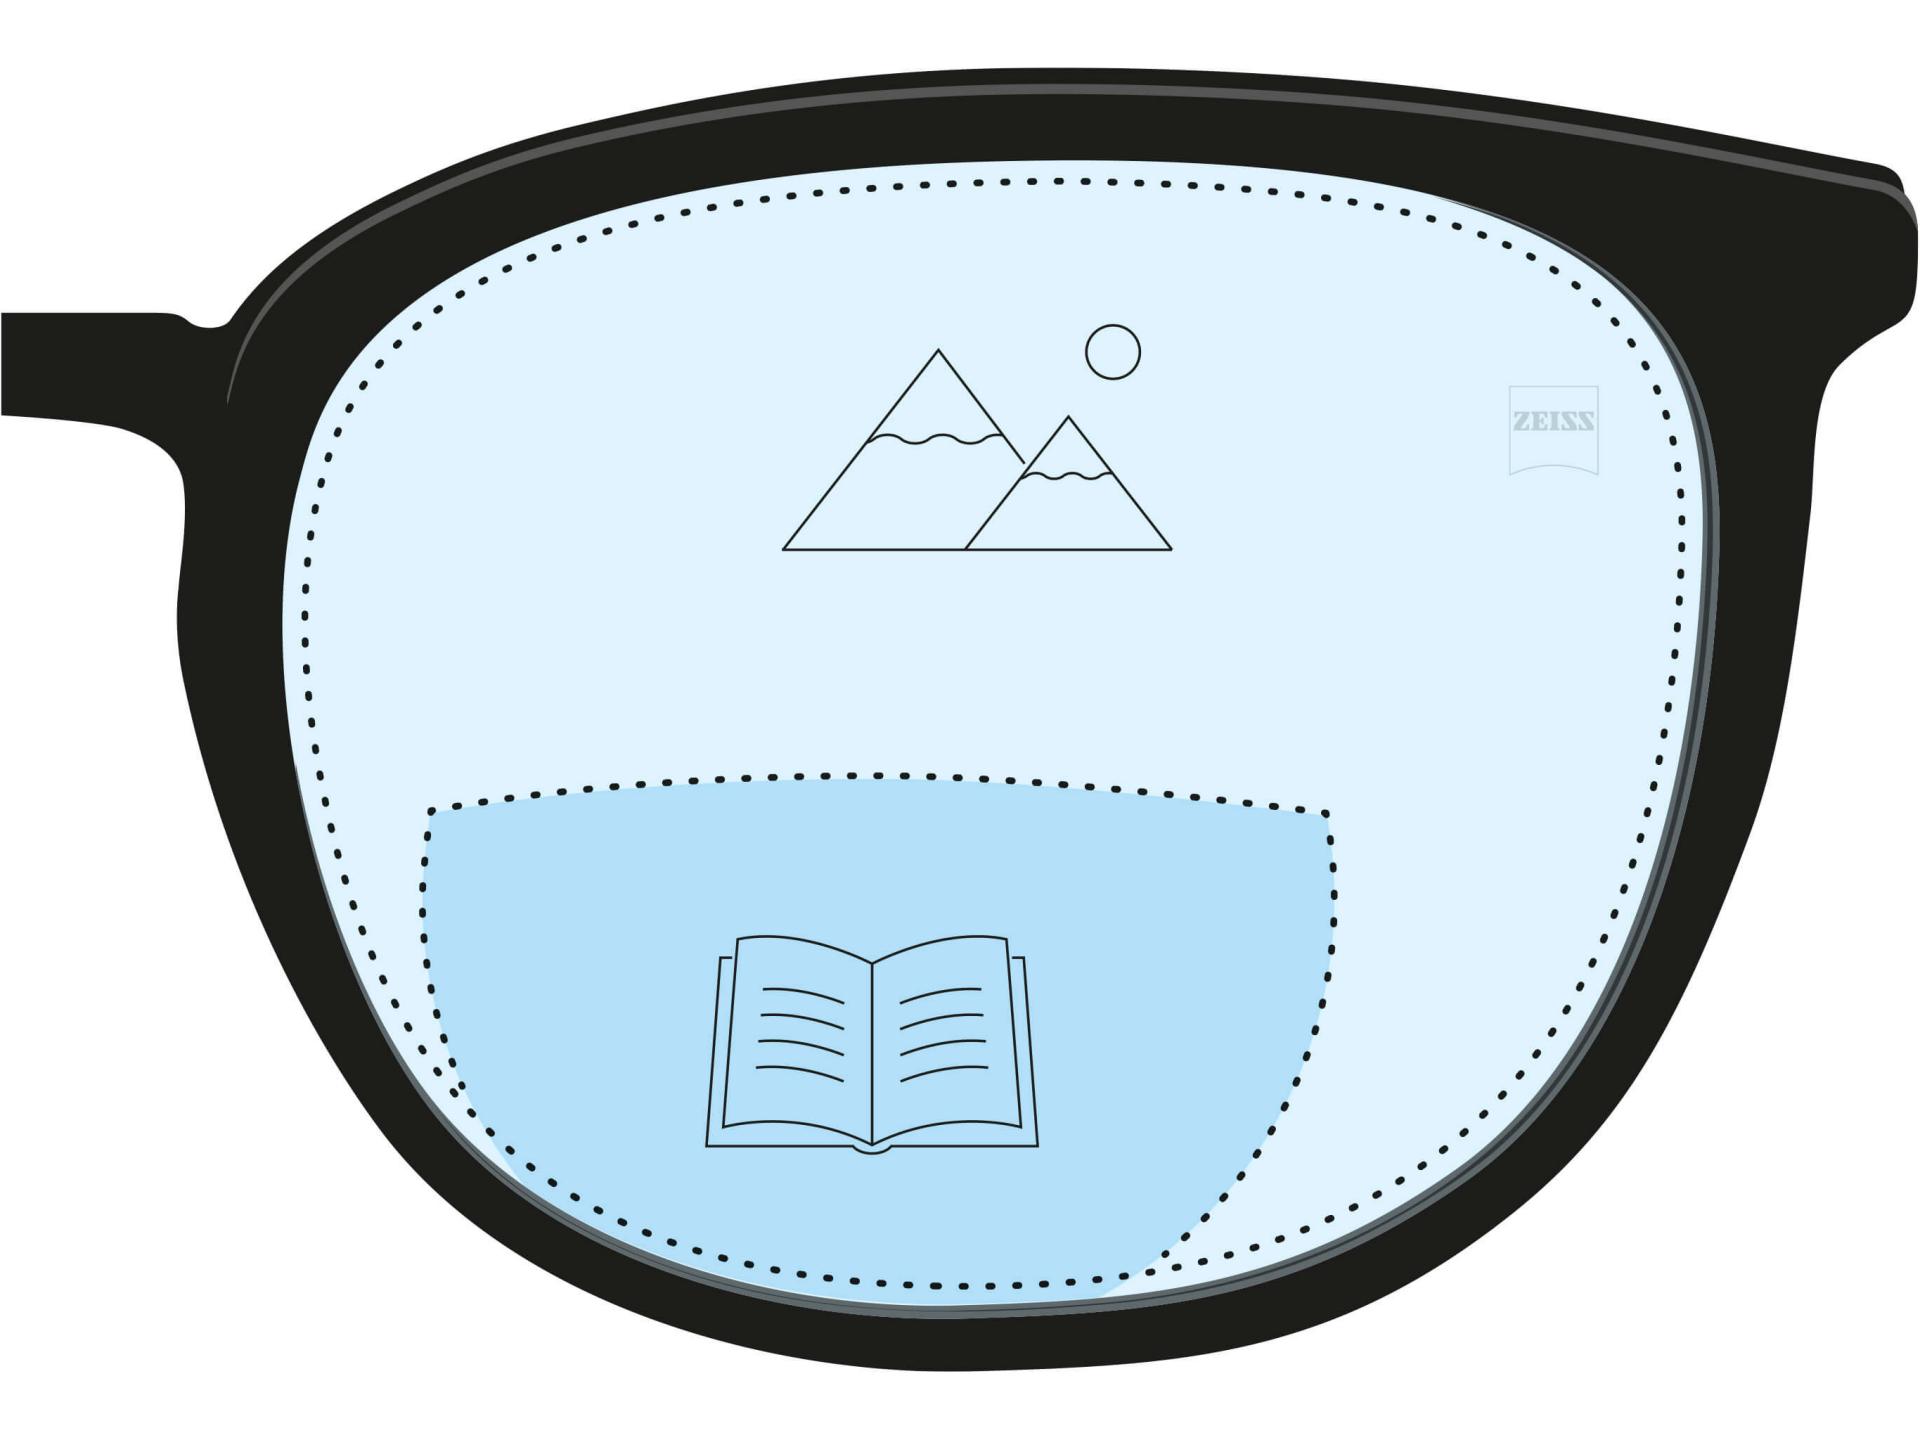 Una ilustración de una lente bifocal. Una zona en azul oscuro indica la zona de lectura, mientras que una parte en azul claro de la lente indica la zona de lejos.